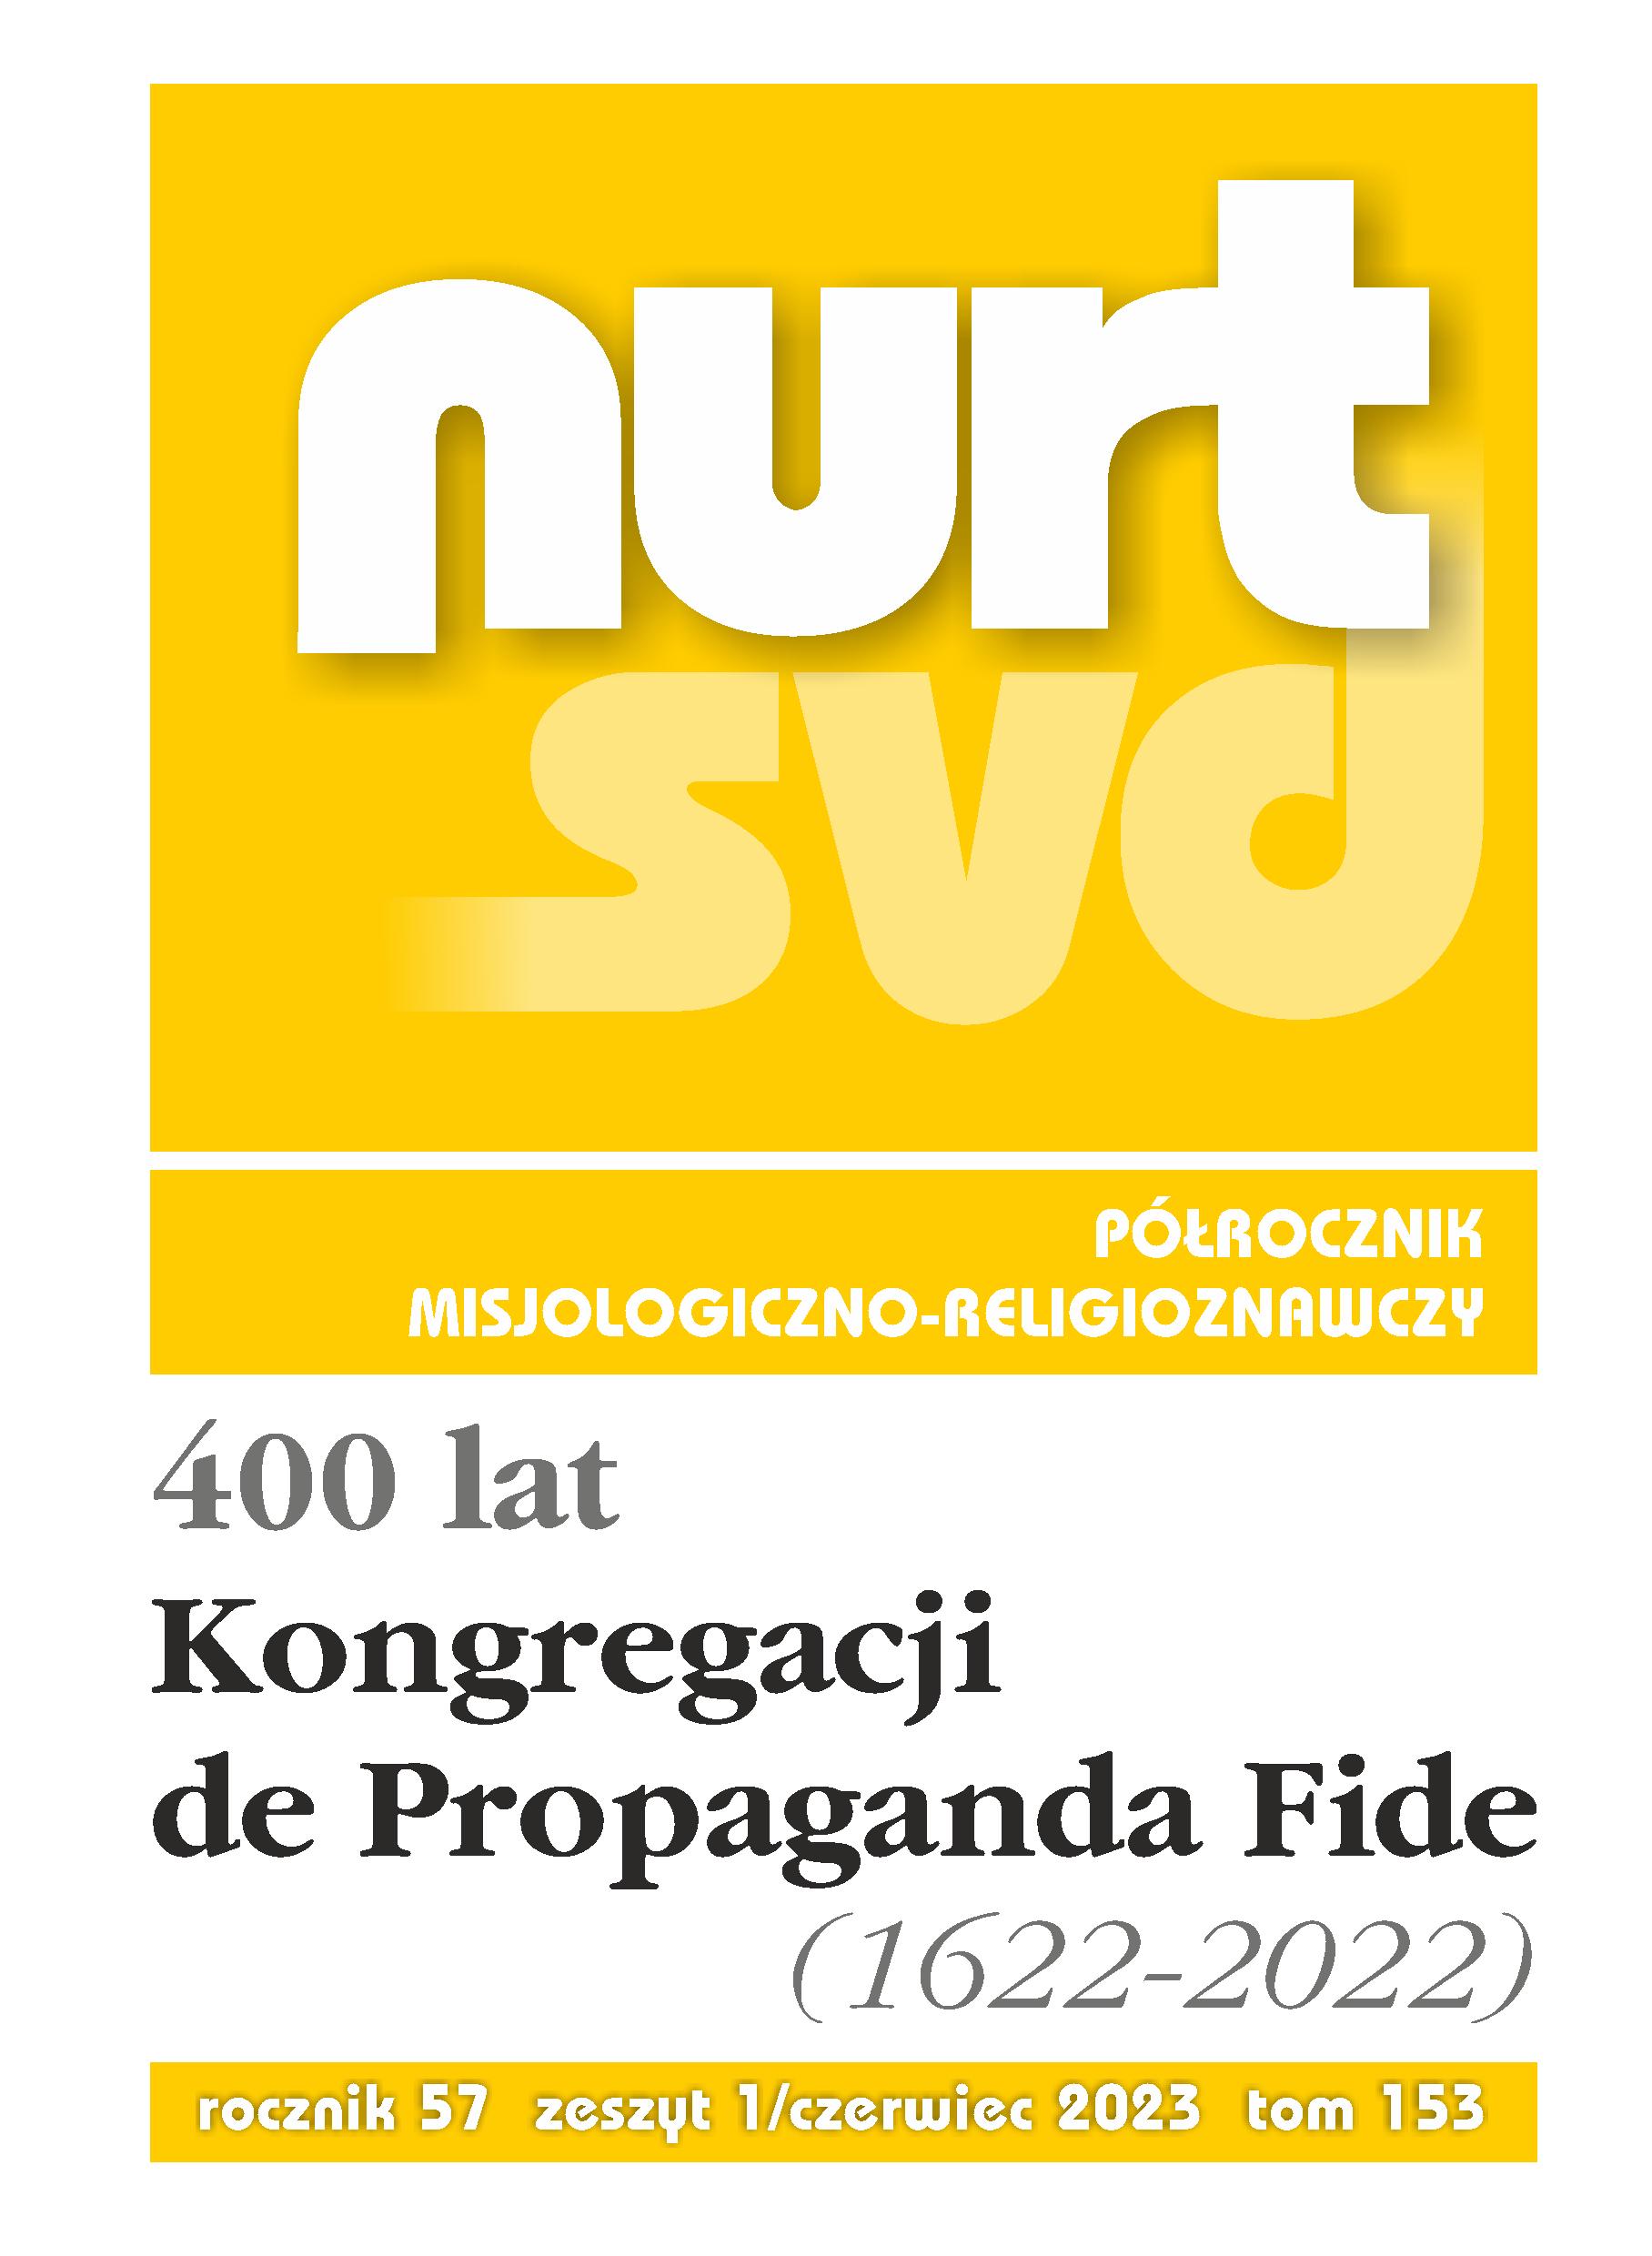 Colegios de Propaganda Fide in the New World Cover Image